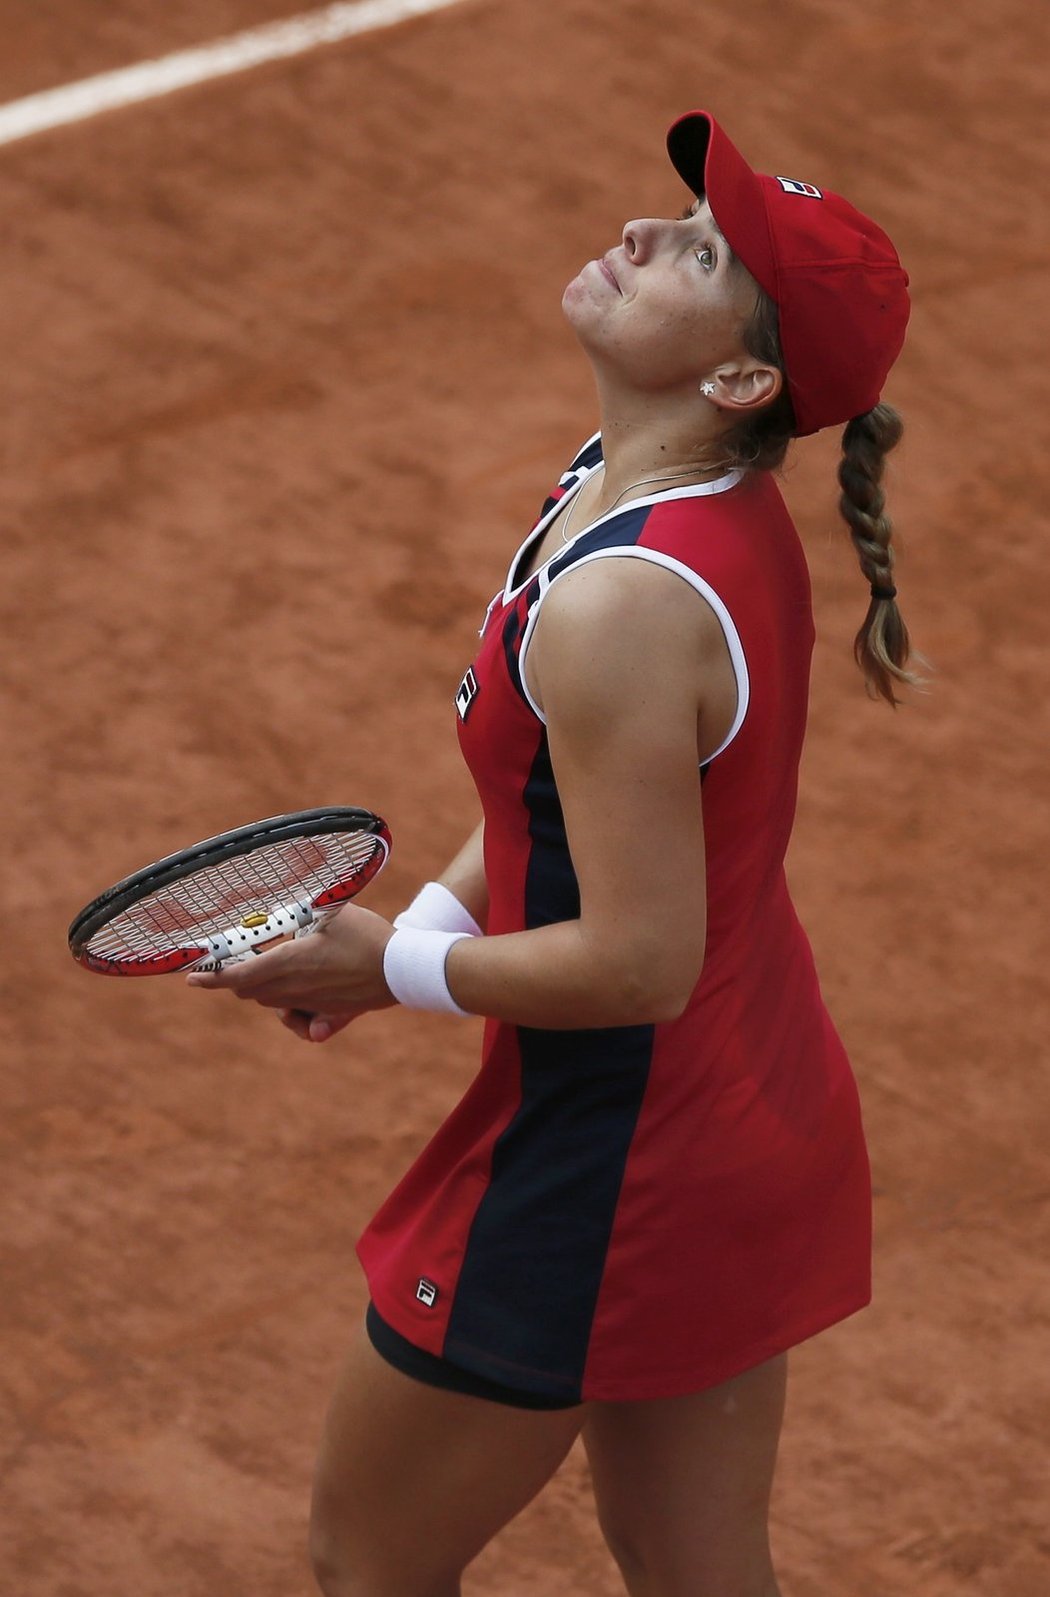 Novozélanďanka Marina Erakovičová během prohraného utkání druhého kola French Open s Petrou Kvitovou